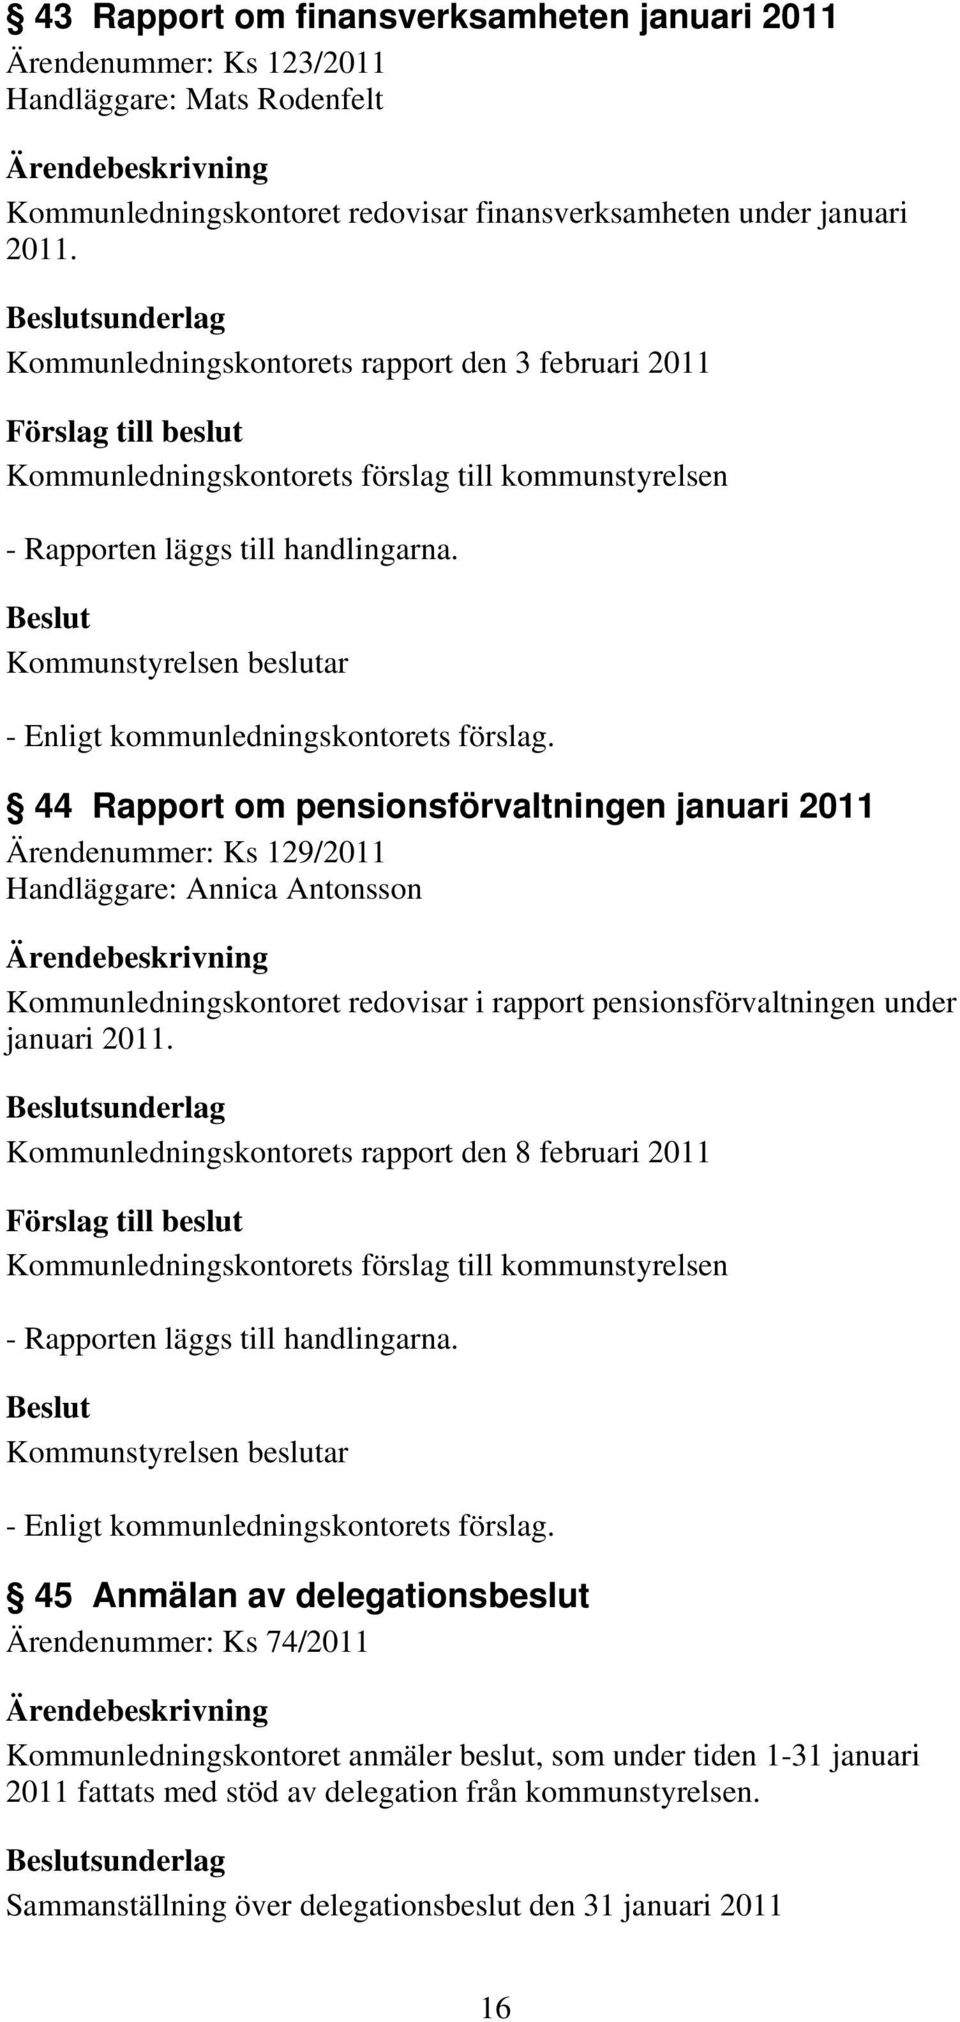 44 Rapport om pensionsförvaltningen januari 2011 Ärendenummer: Ks 129/2011 Handläggare: Annica Antonsson Kommunledningskontoret redovisar i rapport pensionsförvaltningen under januari 2011.